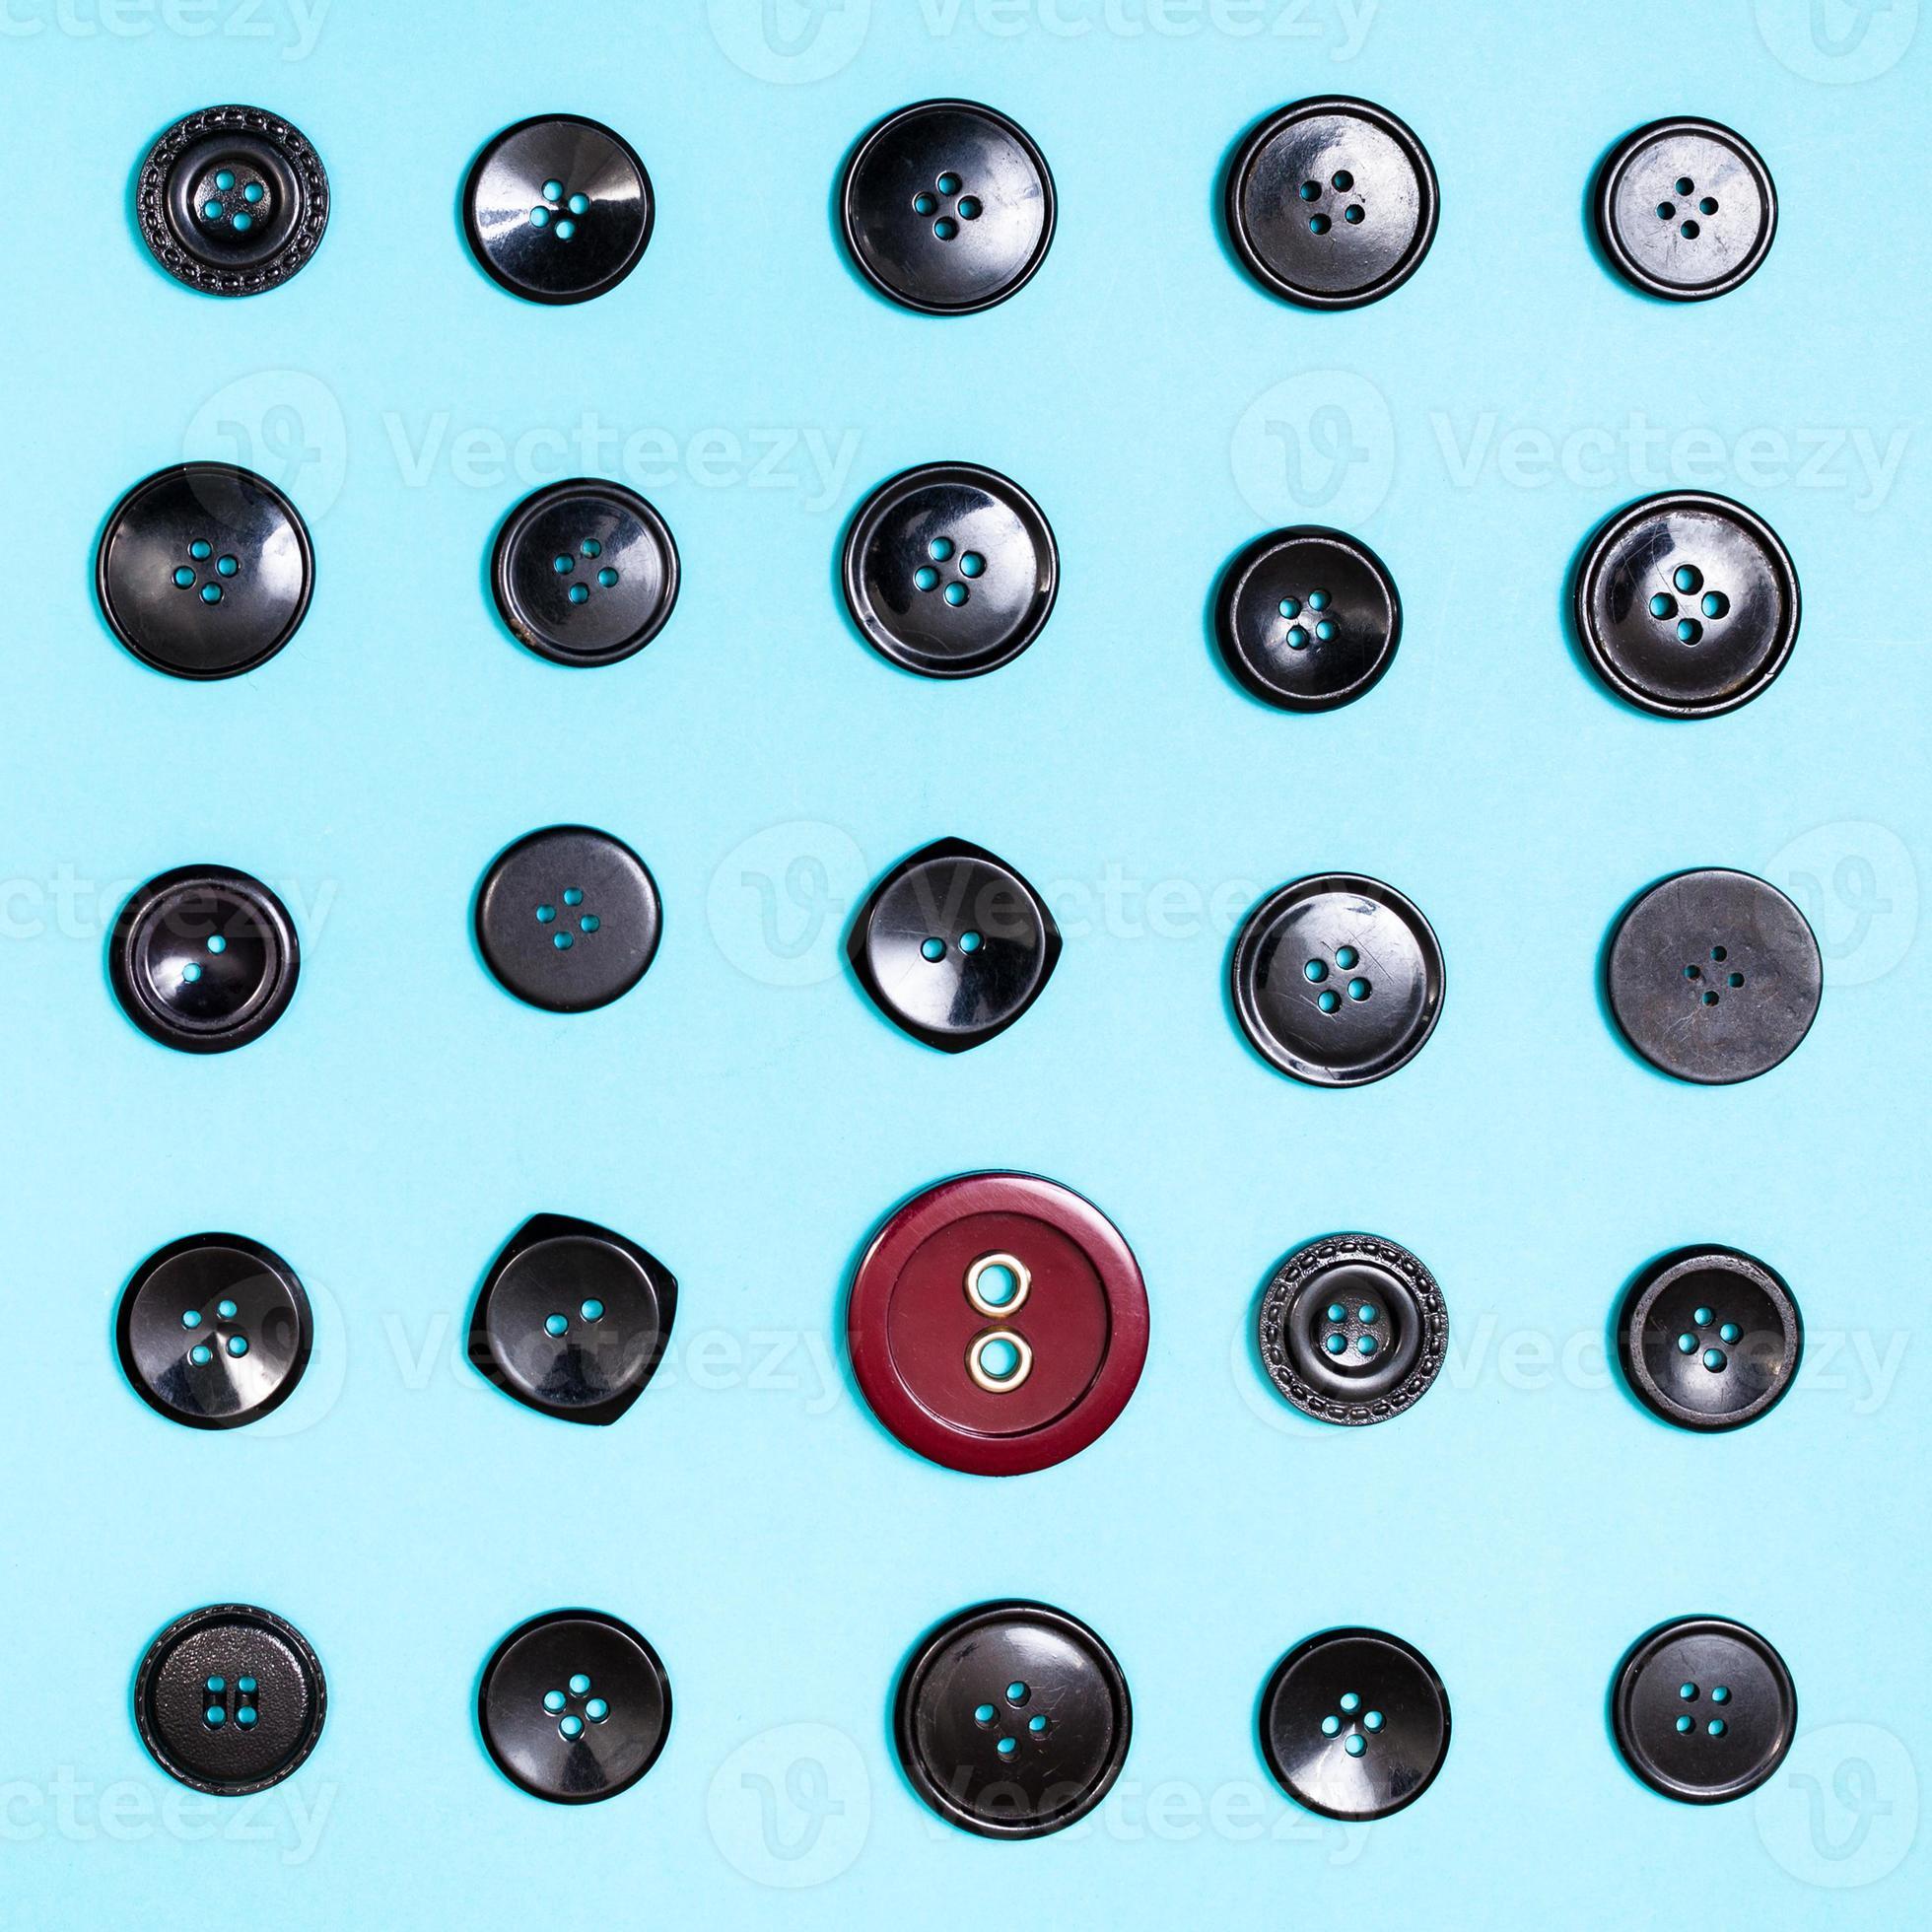 botón rojo entre muchos botones negros en azul 10815967 Foto de